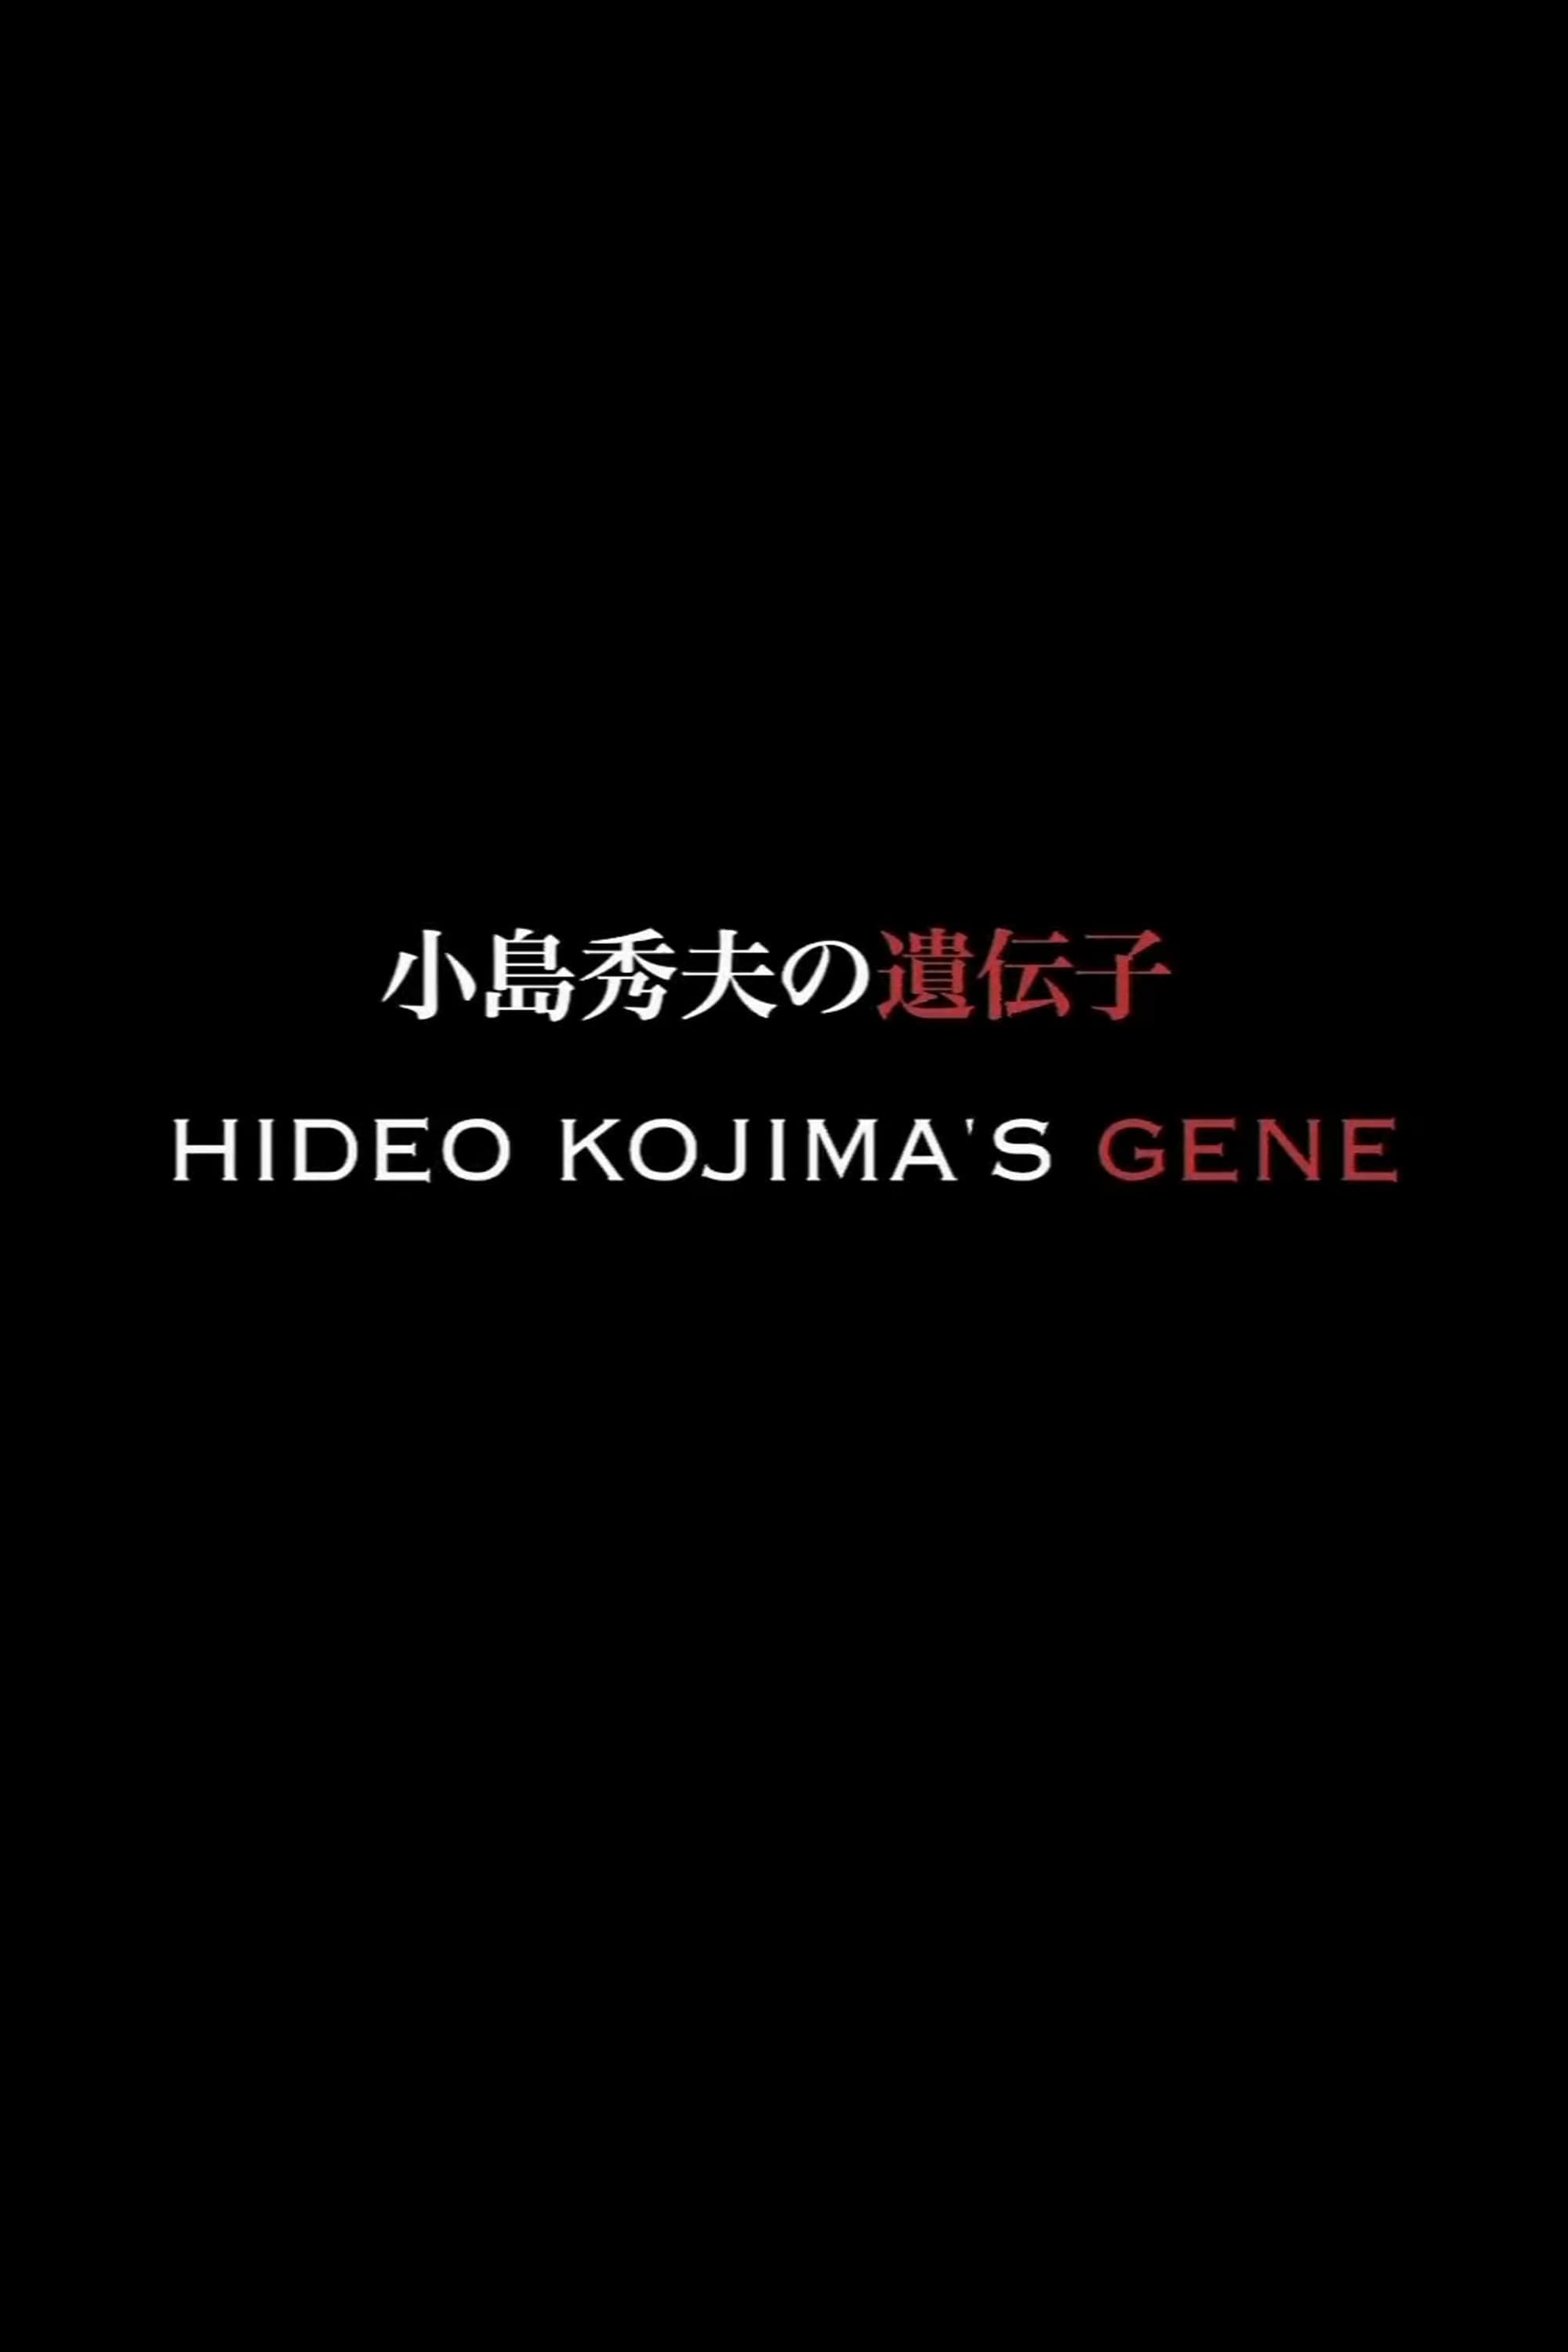 Hideo Kojima's Gene